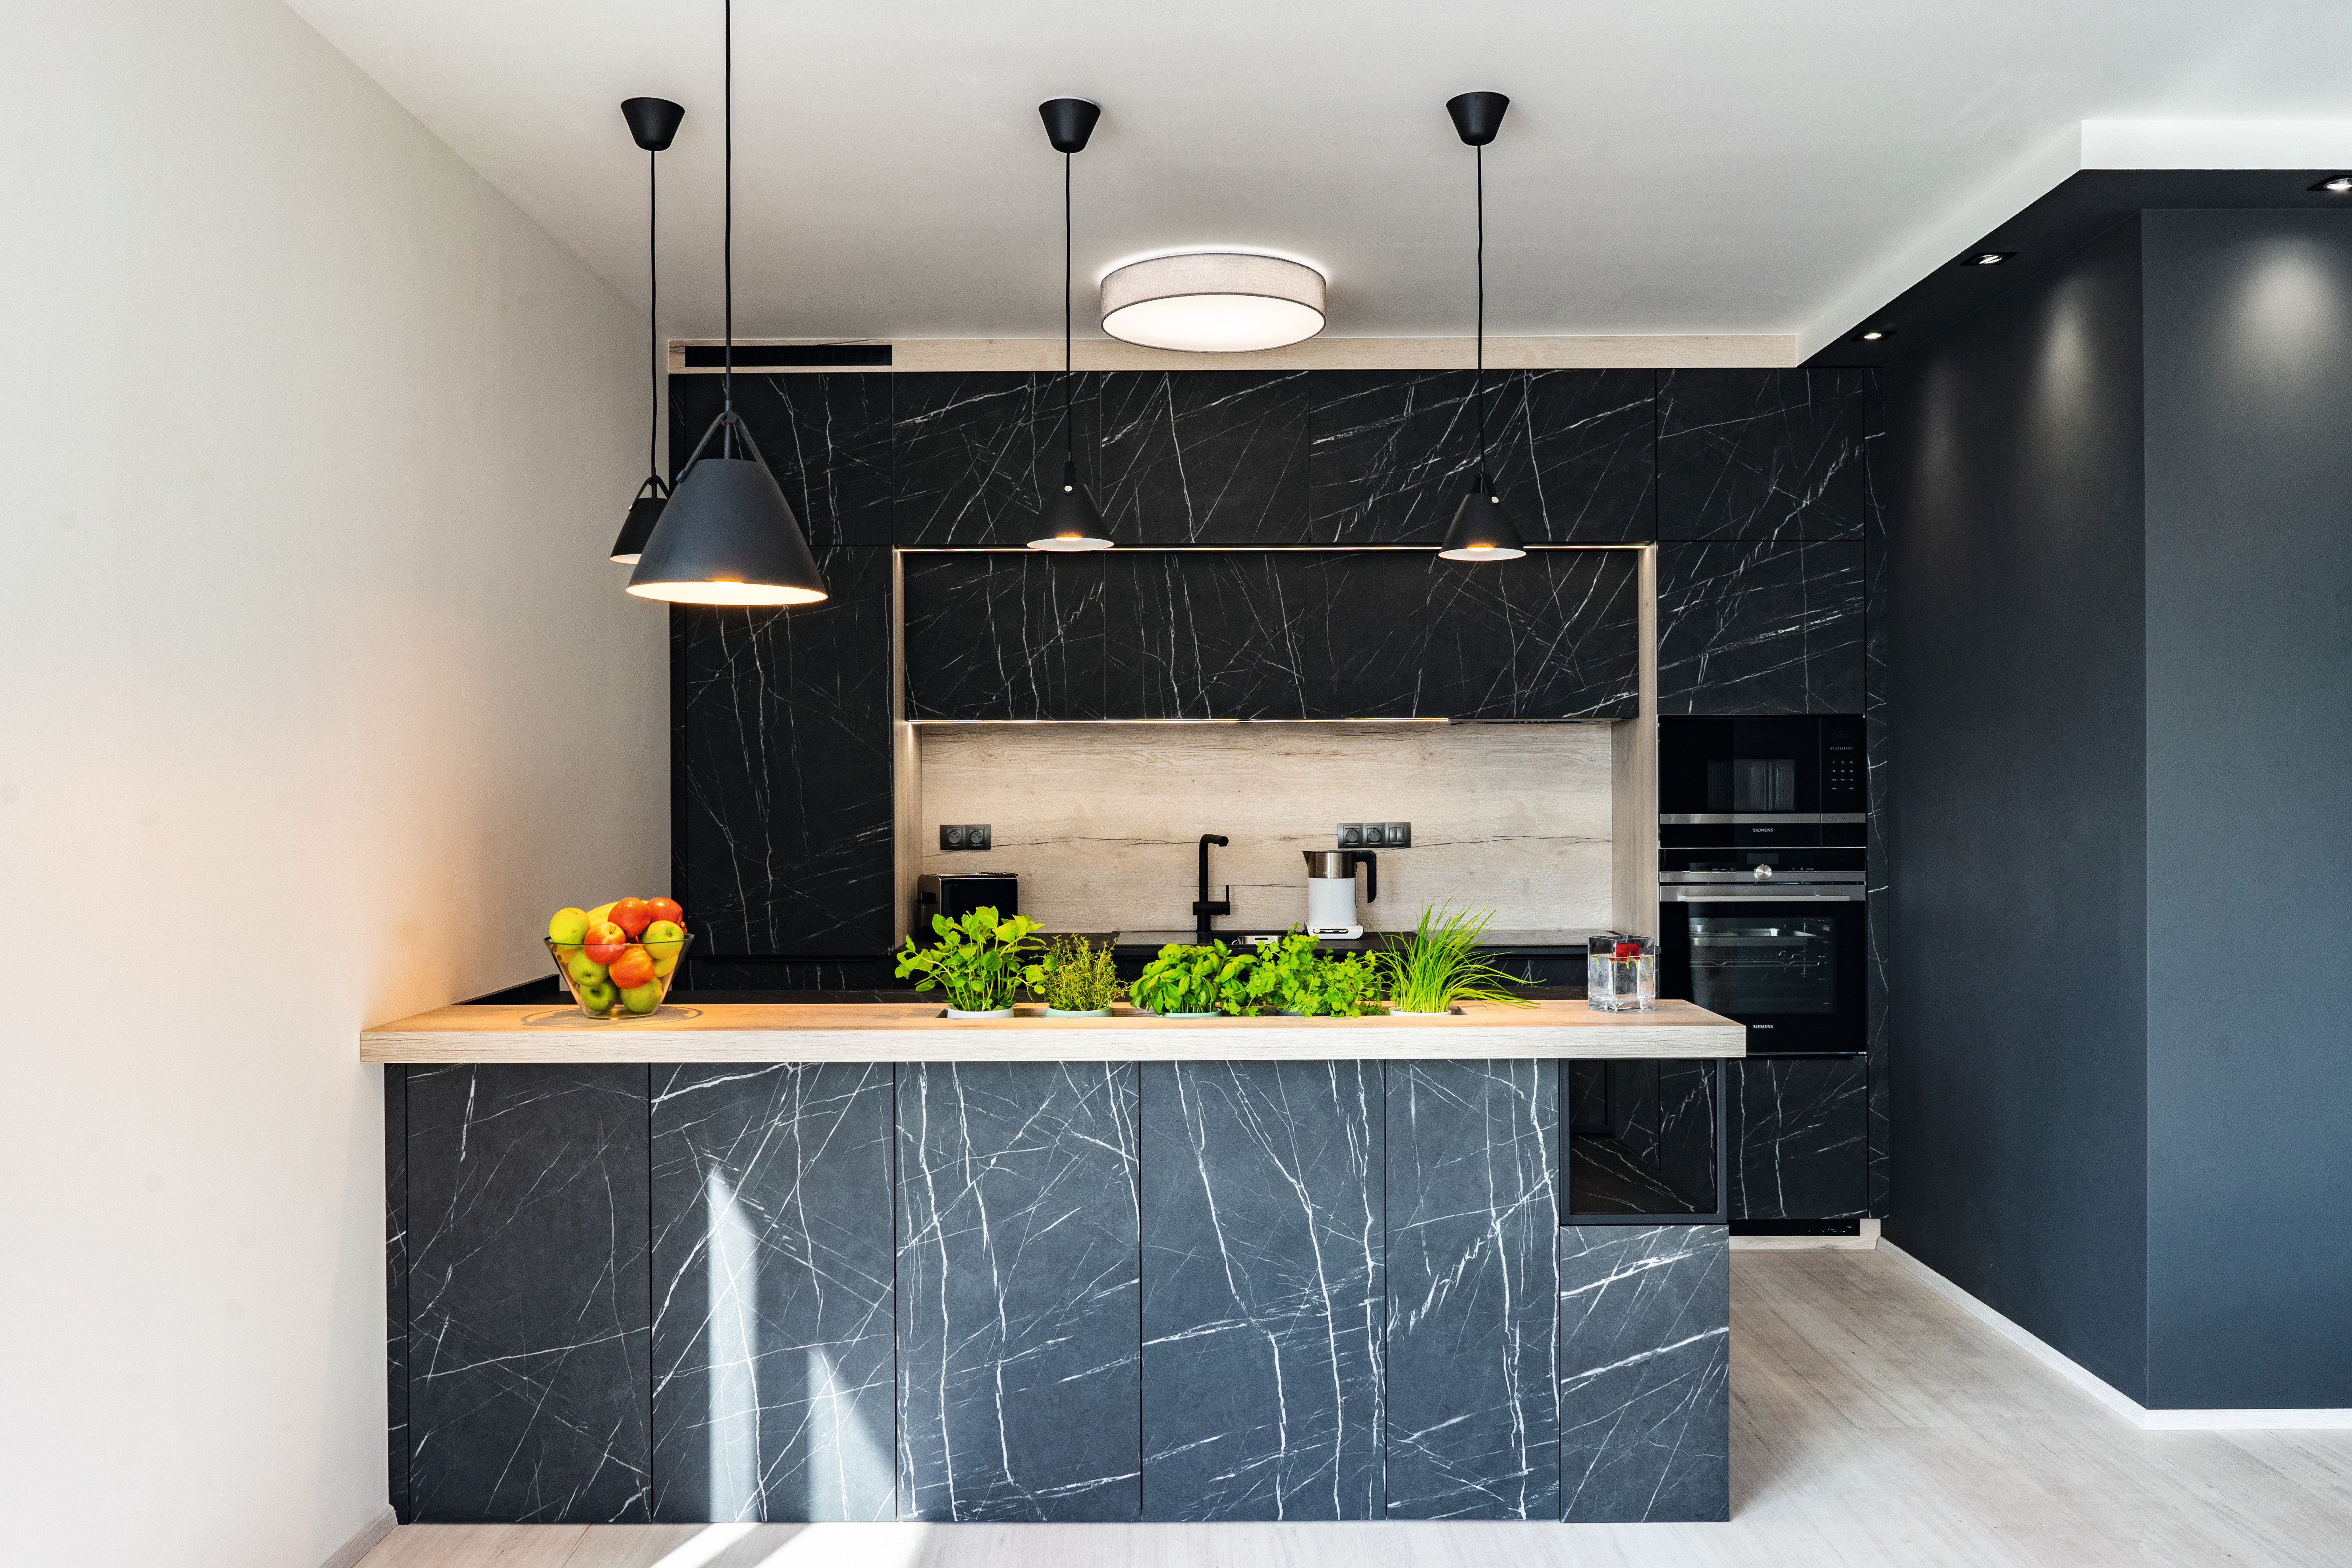 Декор F206 PM Камень Пьетра Гриджиа чёрный на кухне – чистое воплощение элегантности.